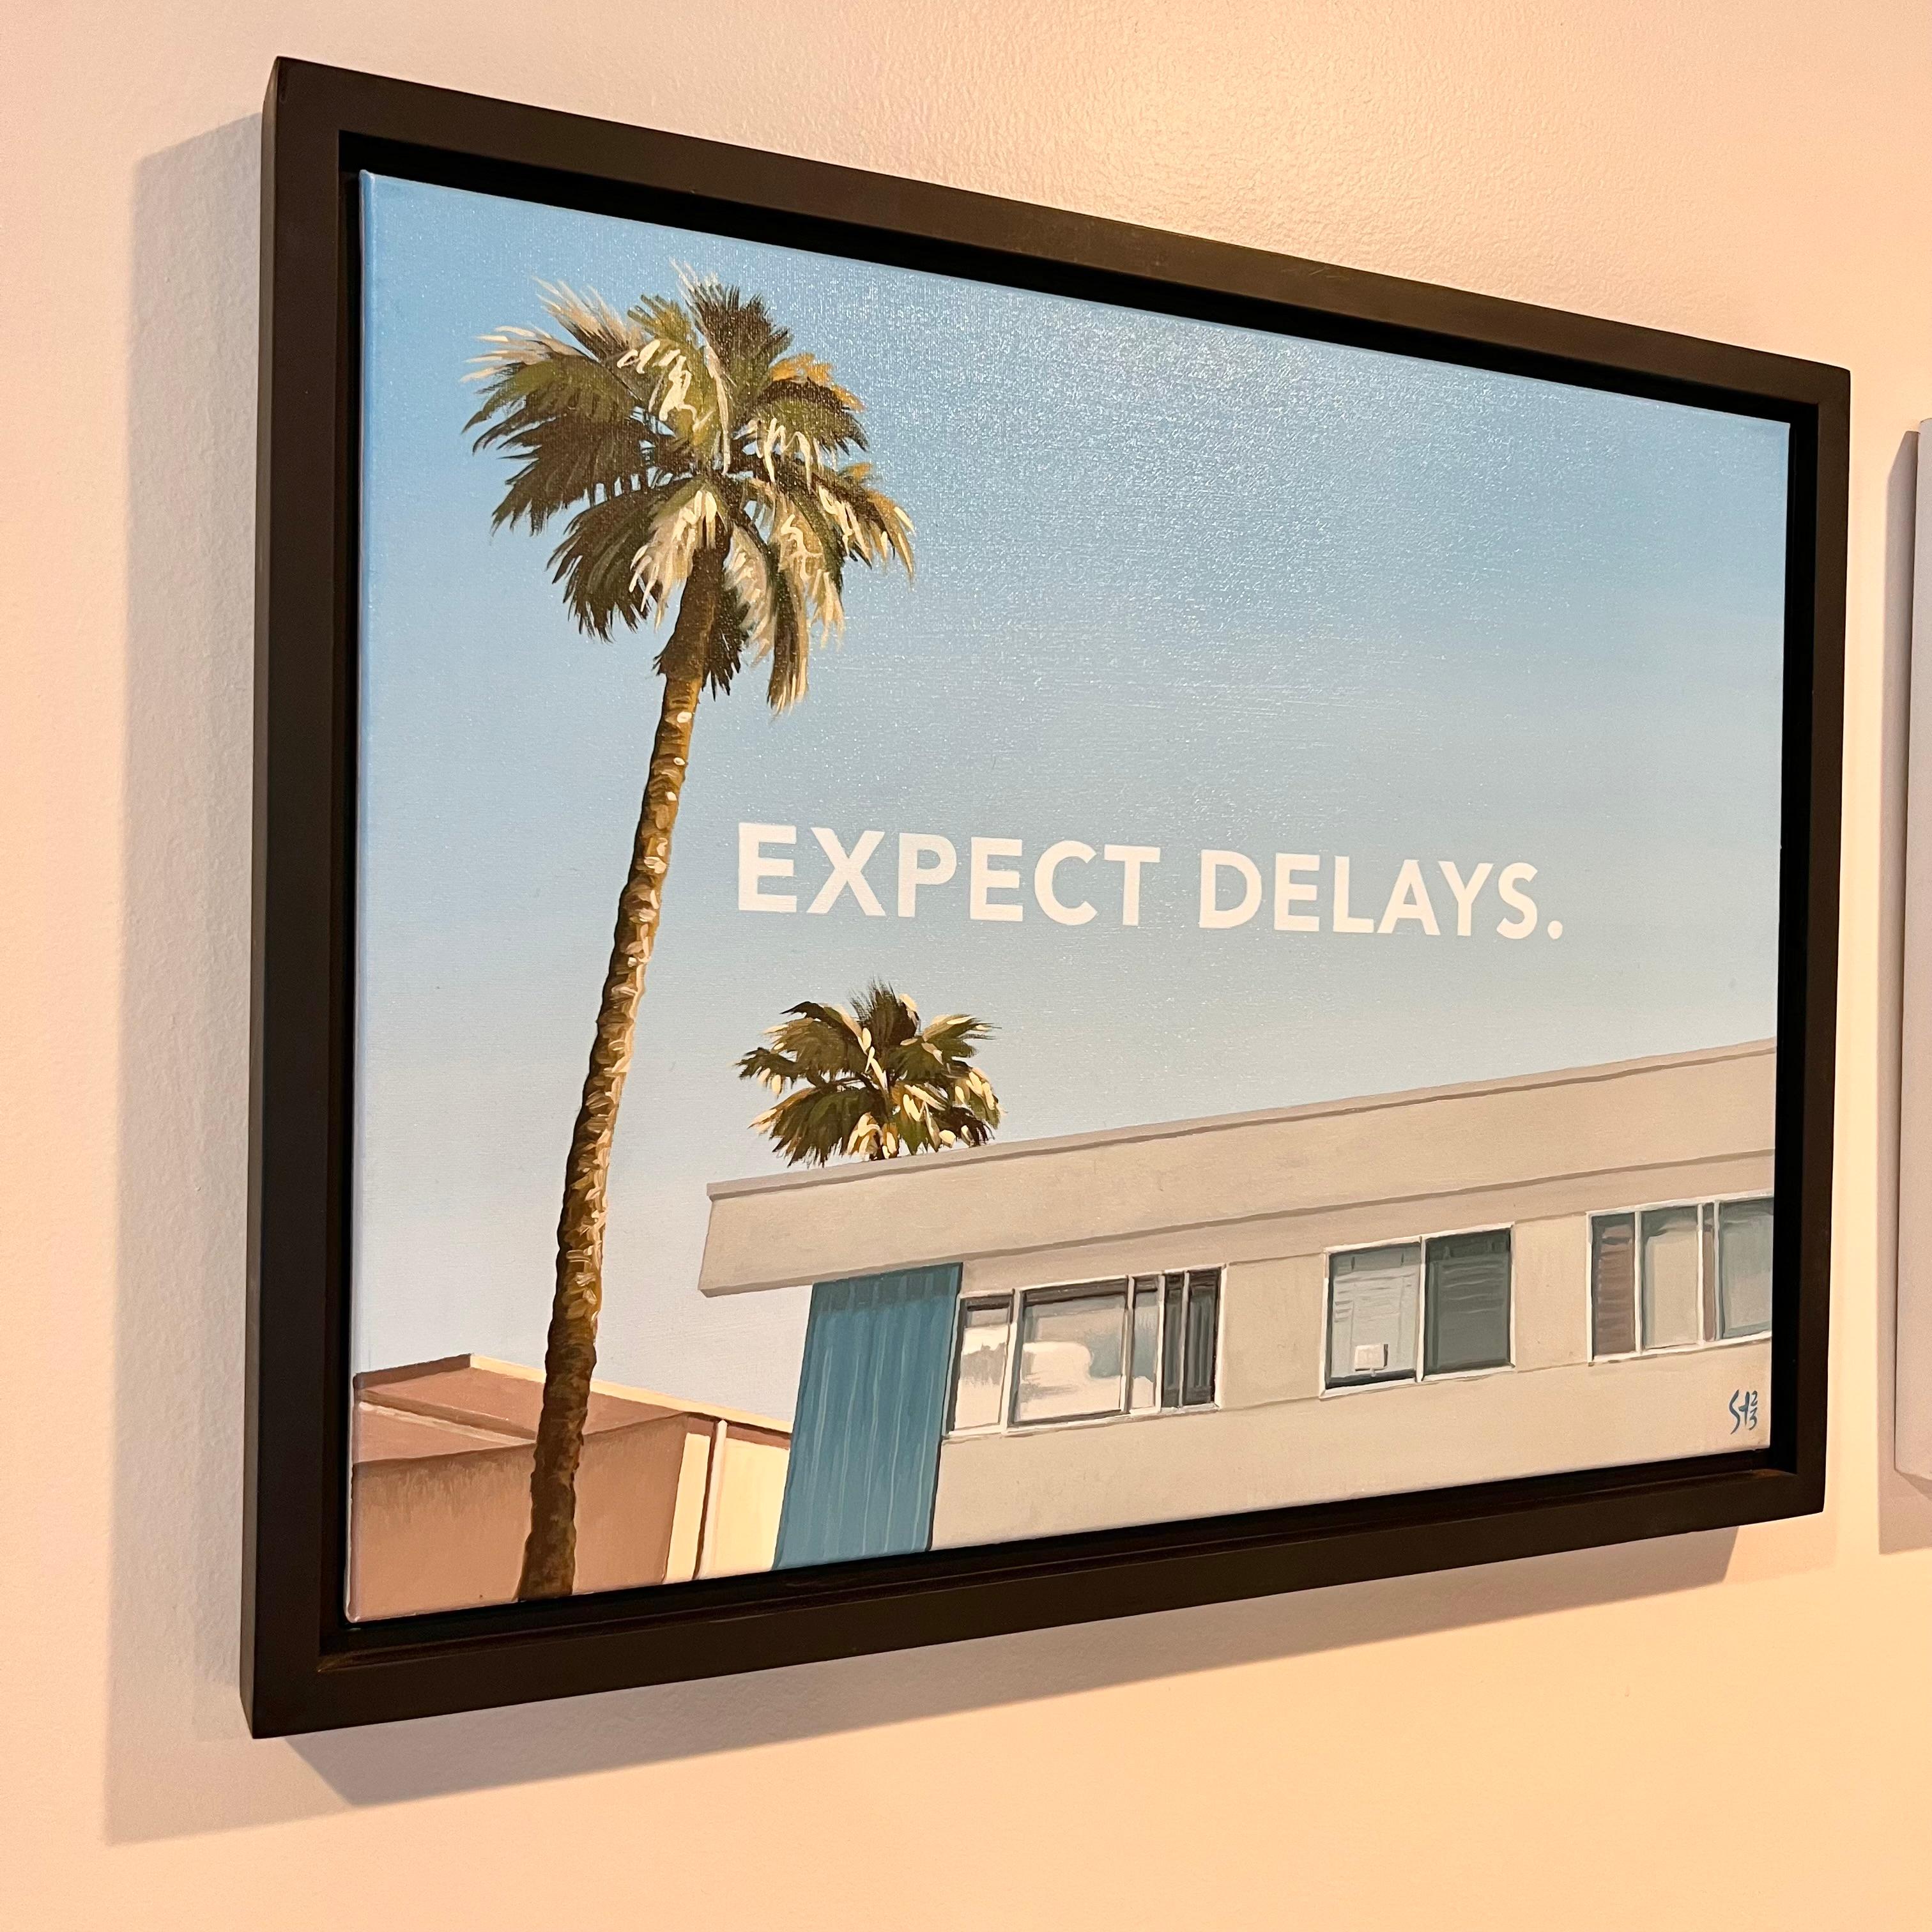 Original Öl auf Leinwand Pop-Art-Gemälde von lokalen Los Angeles Künstler. Erinnert an die Werke von Ed Ruscha. Die typische Landschaft von Los Angeles aus der Zeit vor den 1970er Jahren mit Wohnkomplexen, Palmen und blauem Himmel. 